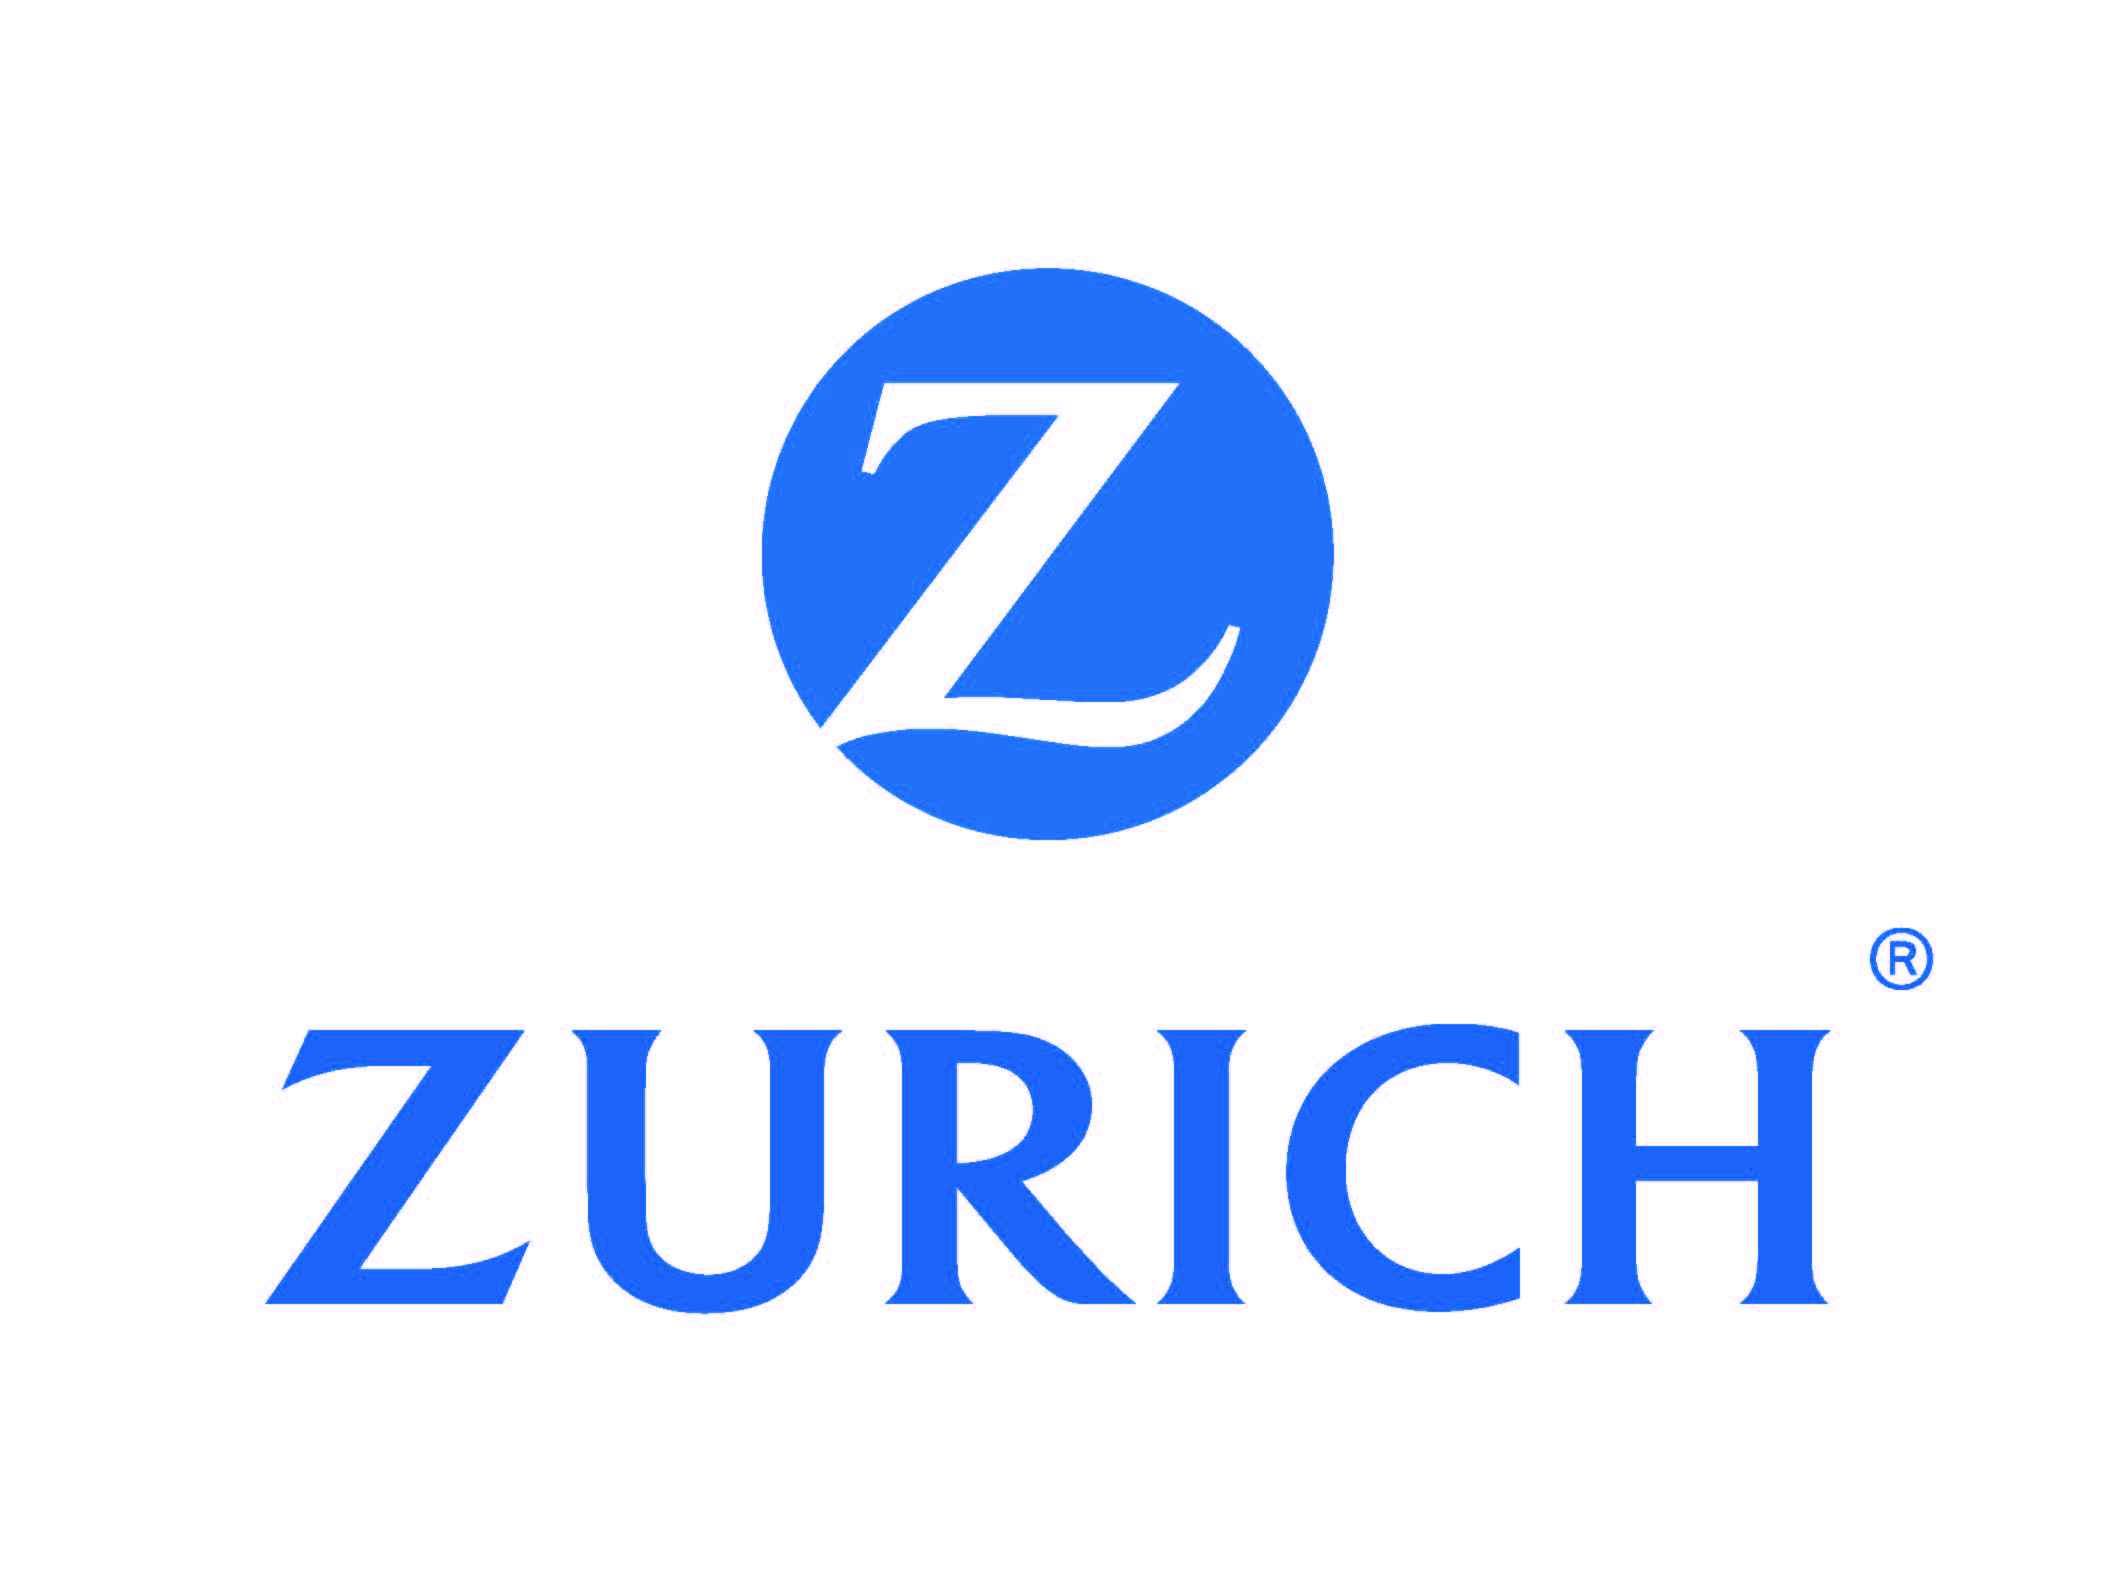 Zurich North America